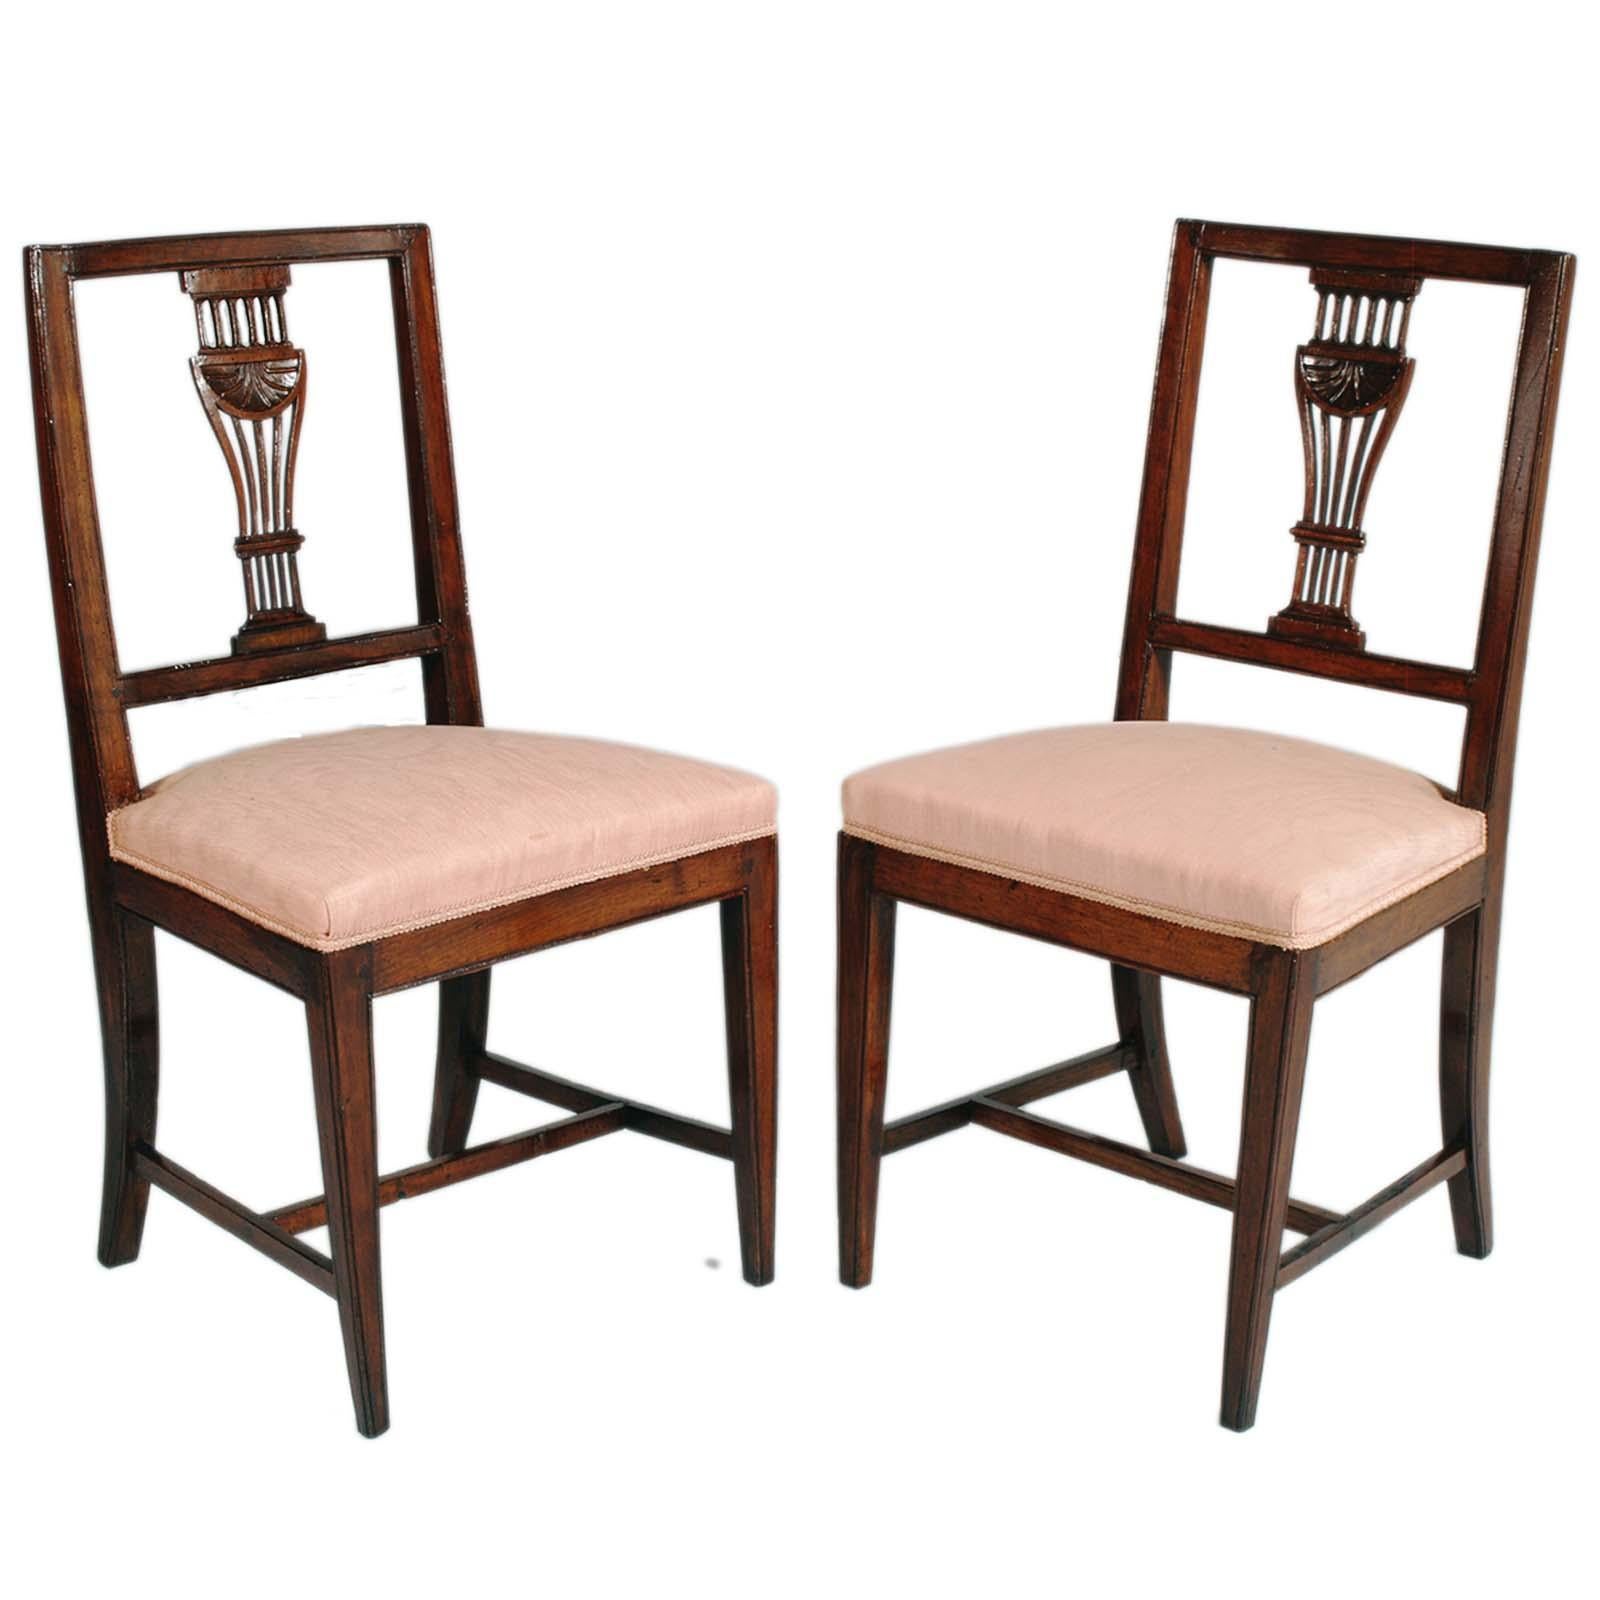 Ensemble de 6 chaises Biedermeier Asolane de la seconde moitié du 19ème siècle en noyer avec dossier en forme de lyre, sculpté à la main. Fixation par clous en bois ; assise à ressorts recouverte de tissu rose ancien en bon état. 
Design/One